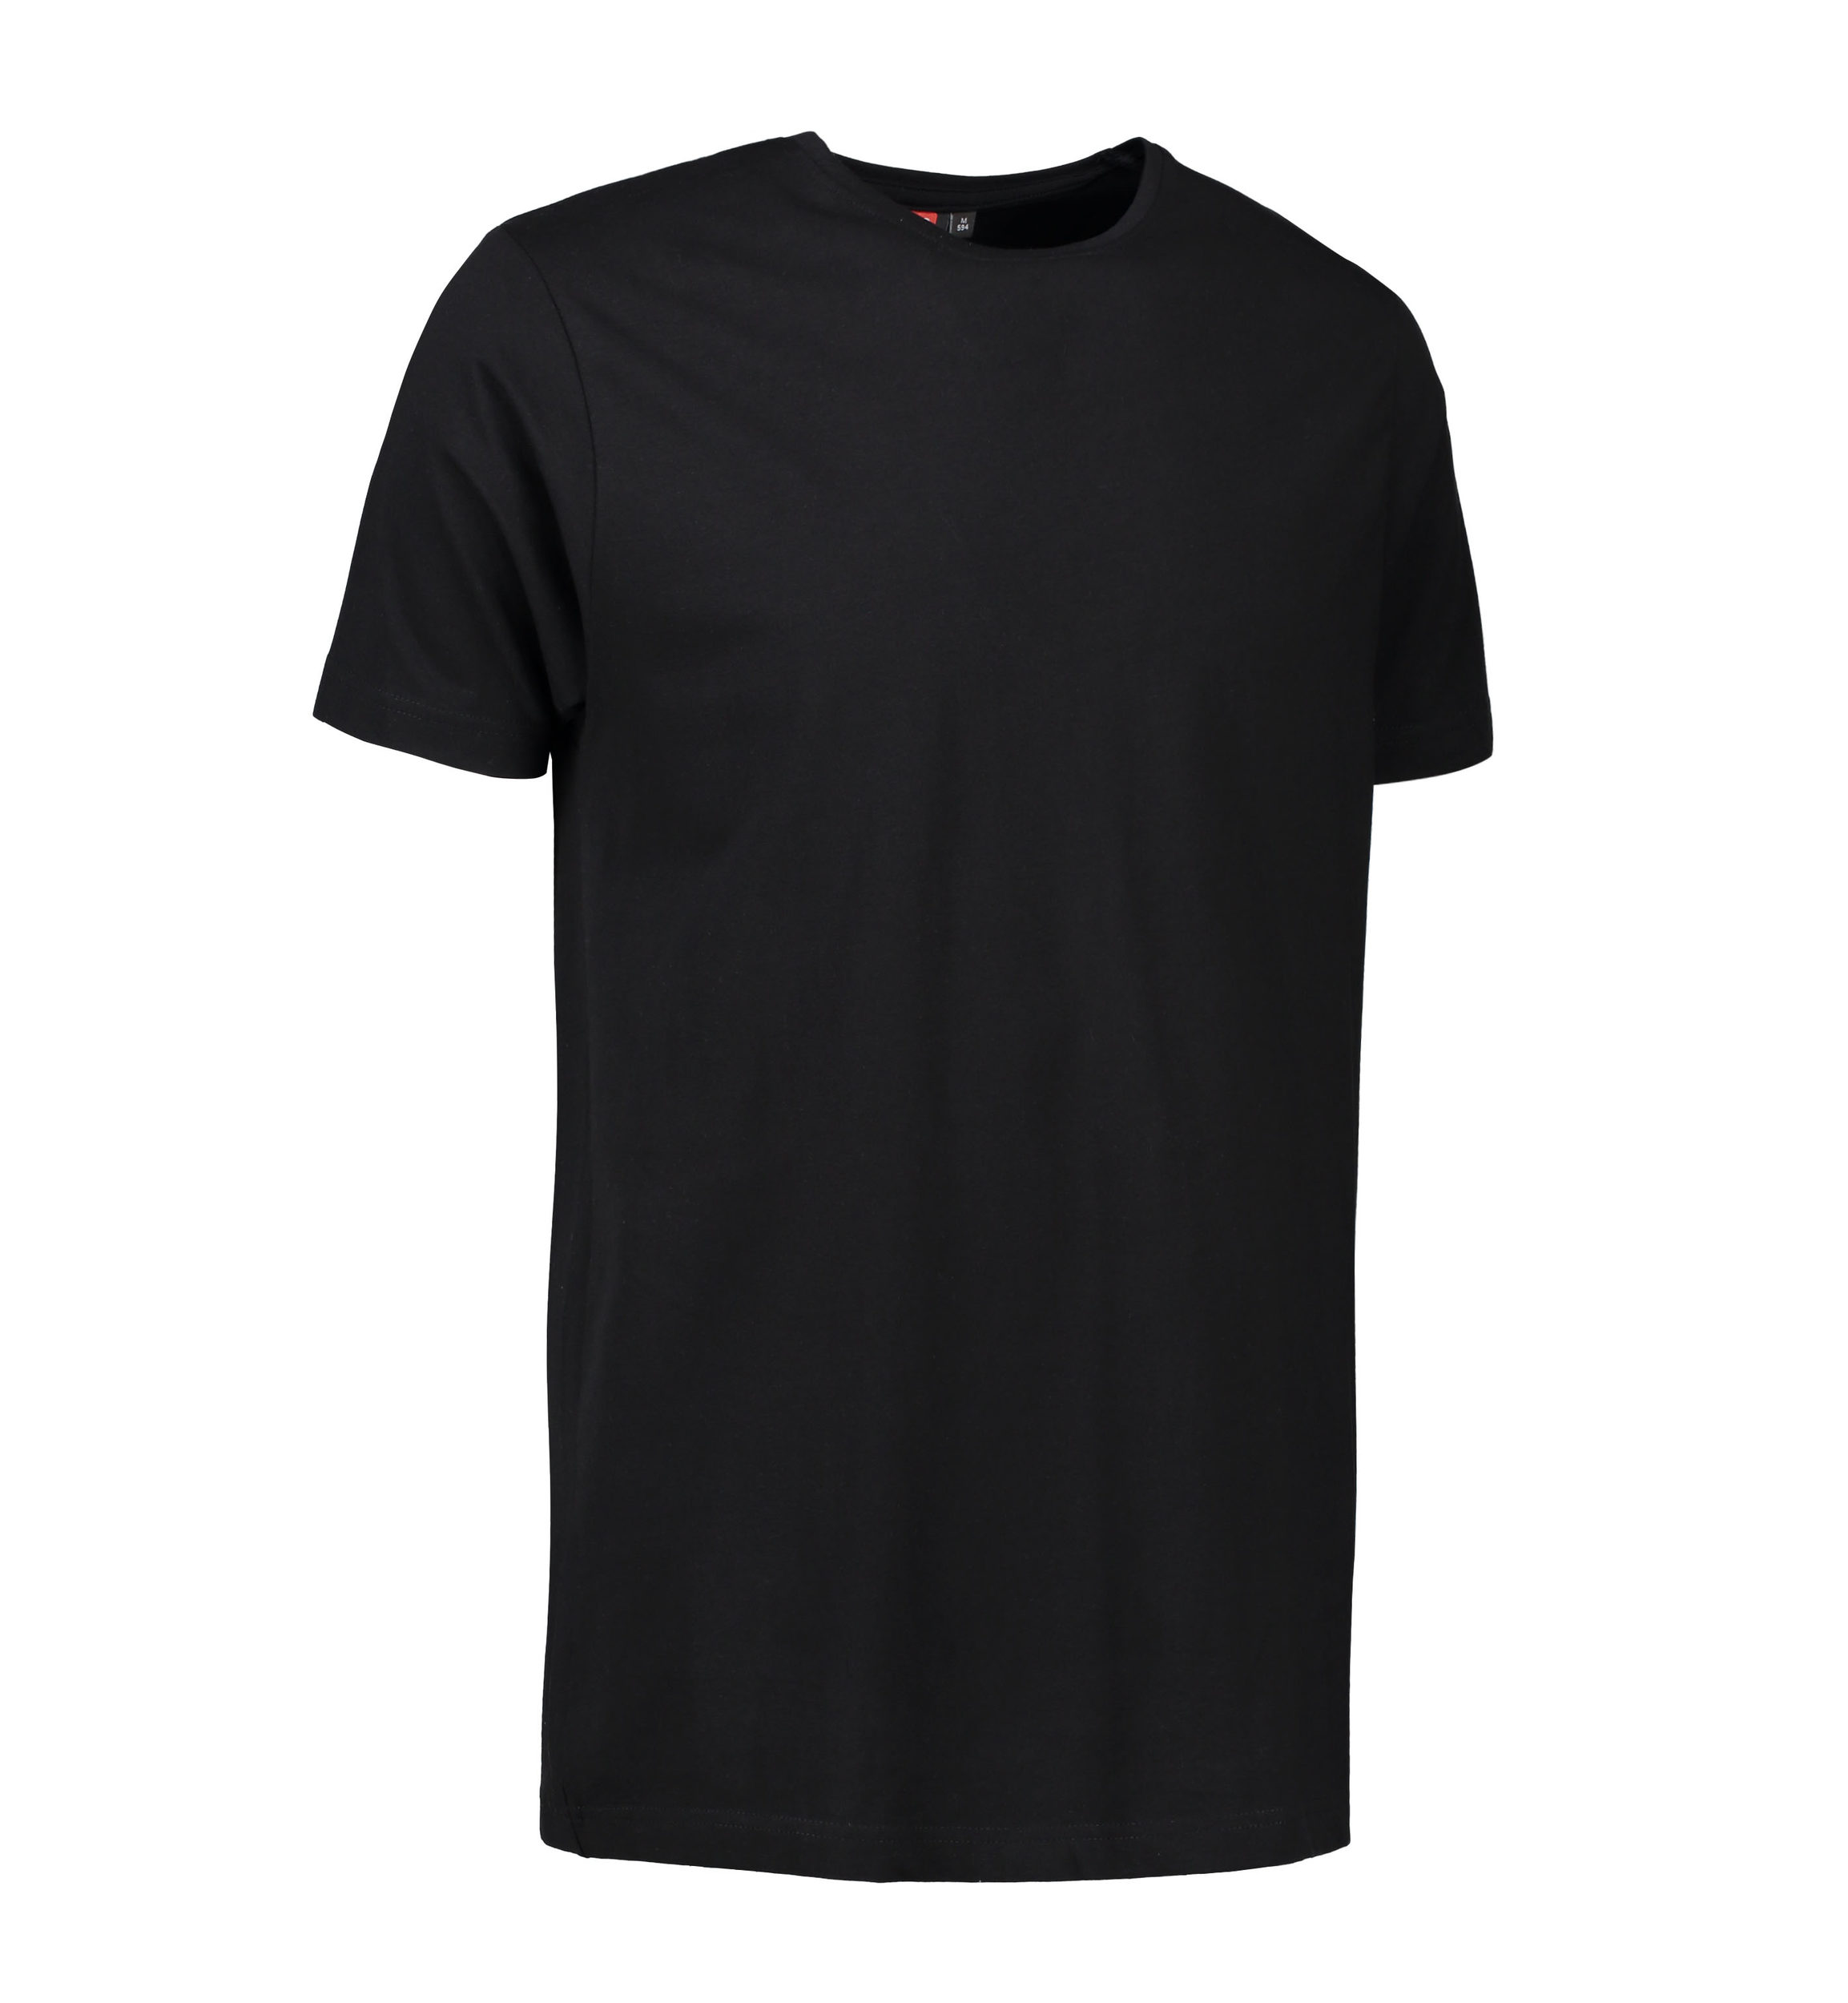 Billede af Stretch t-shirt til mænd i sort - 3XL hos Sygeplejebutikken.dk